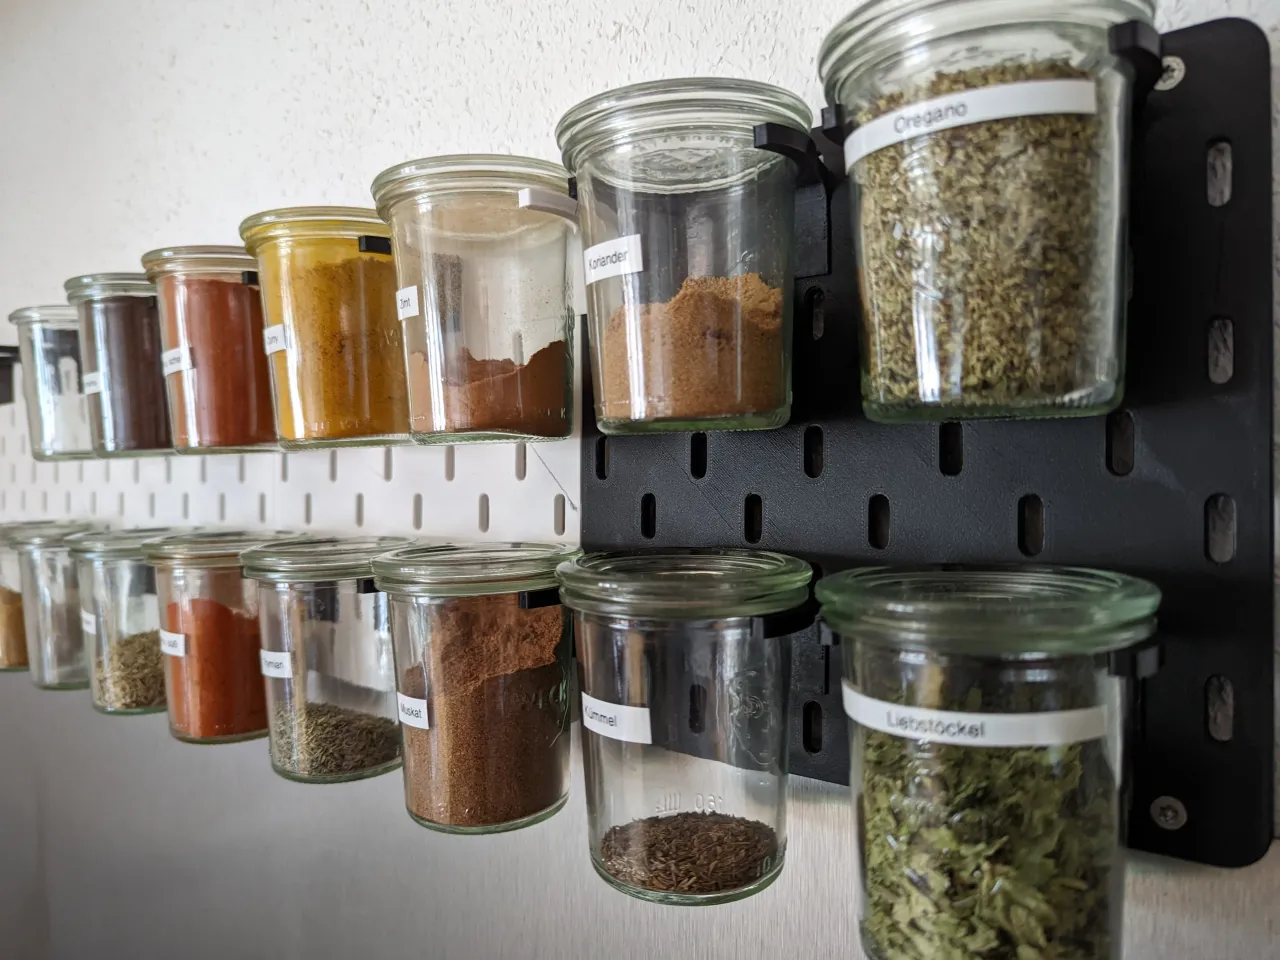 Spice jars – safe spice organization